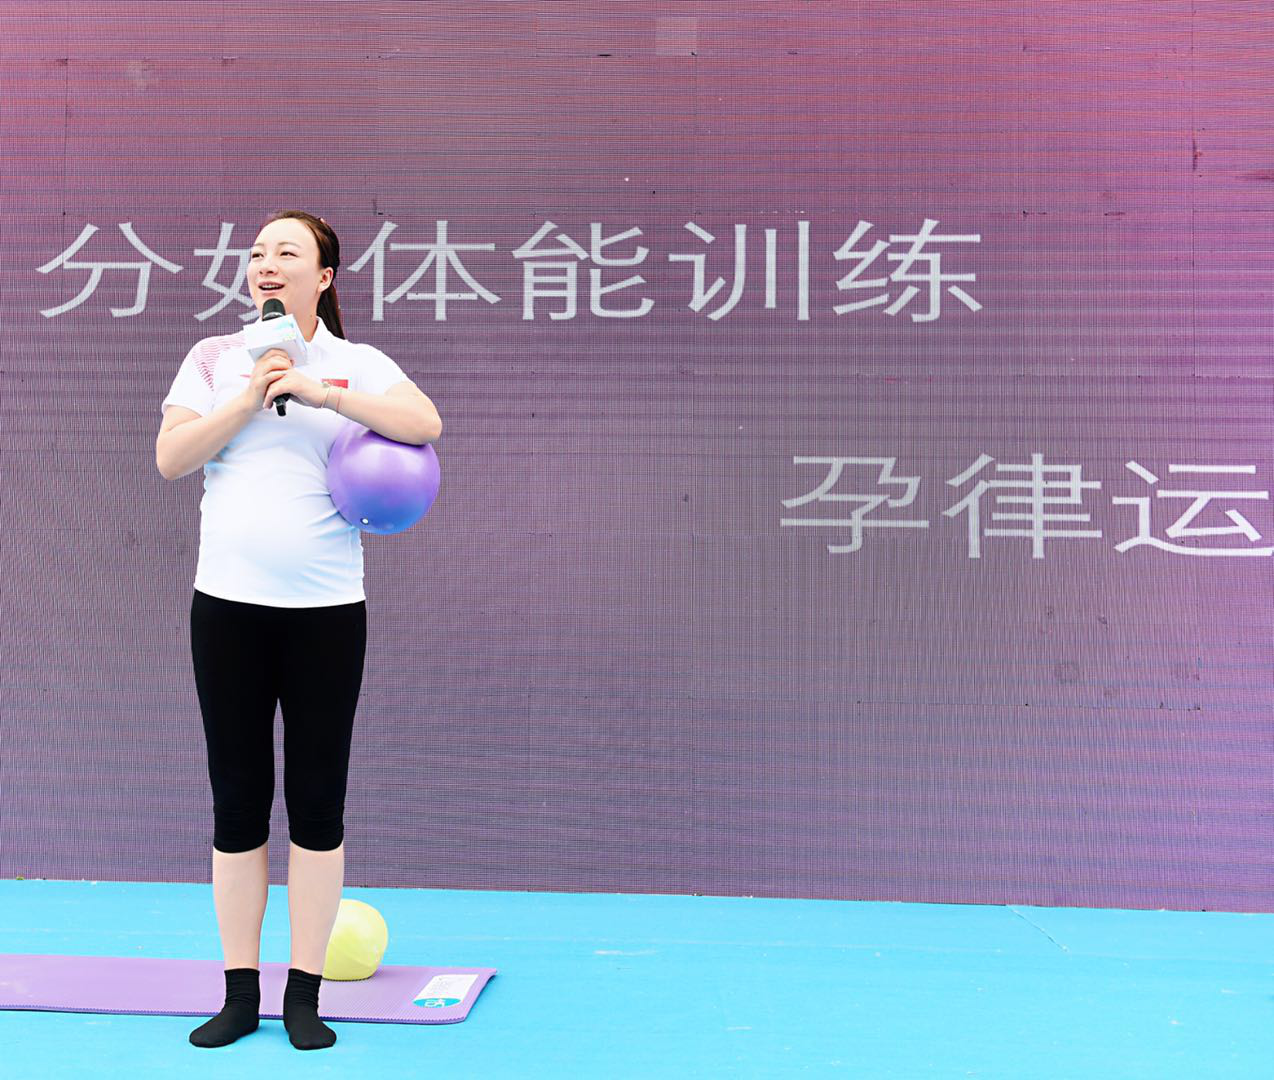 中国自由式滑雪项目第一个世界冠军 李妮娜